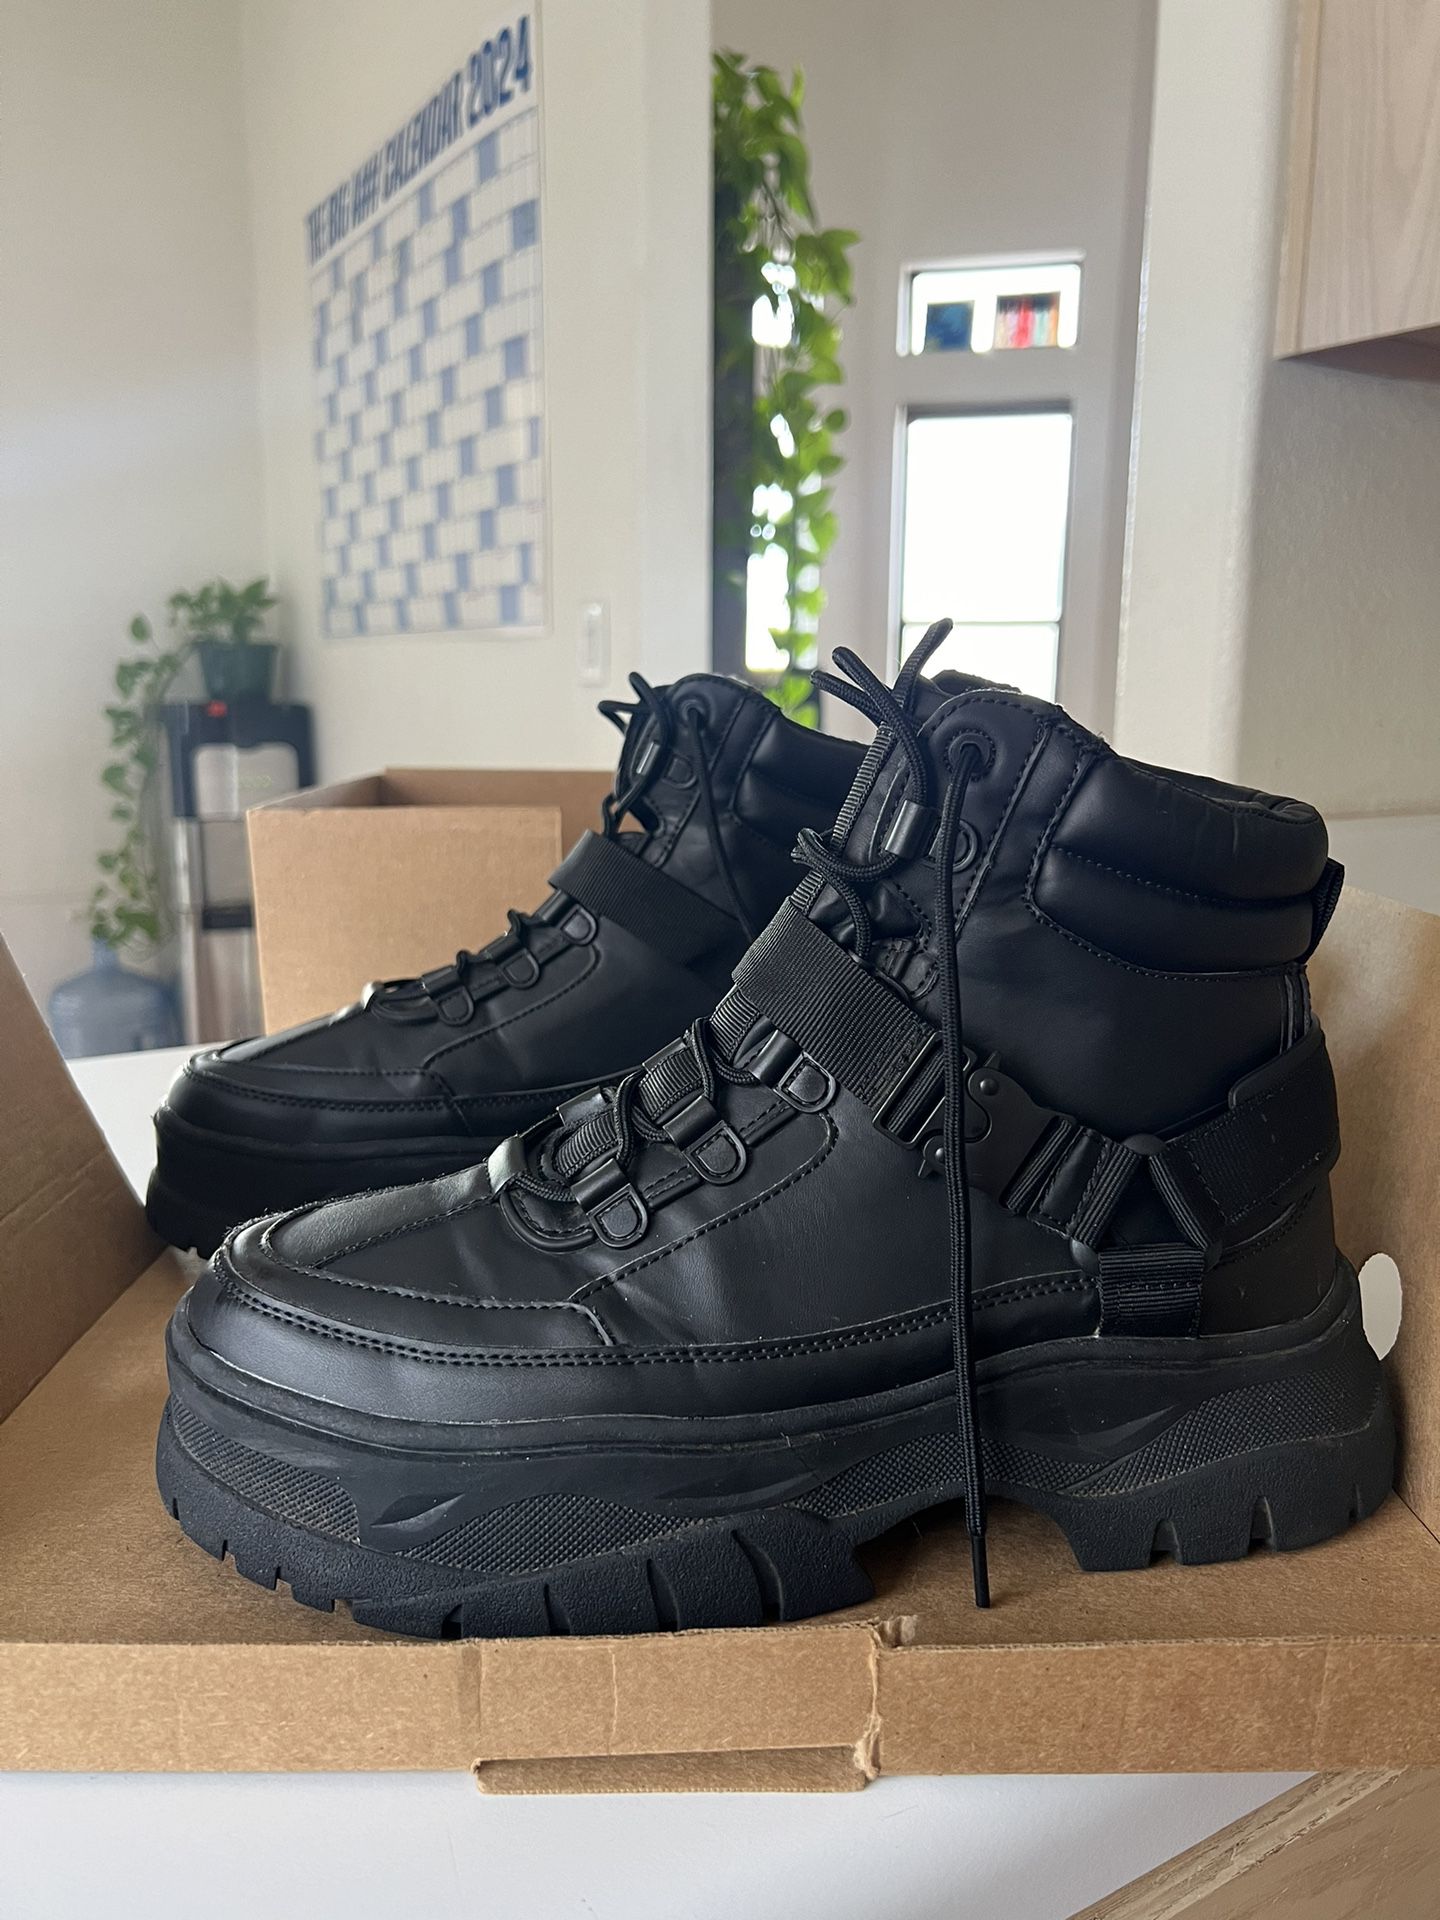 Black Combat Boots Size 12 